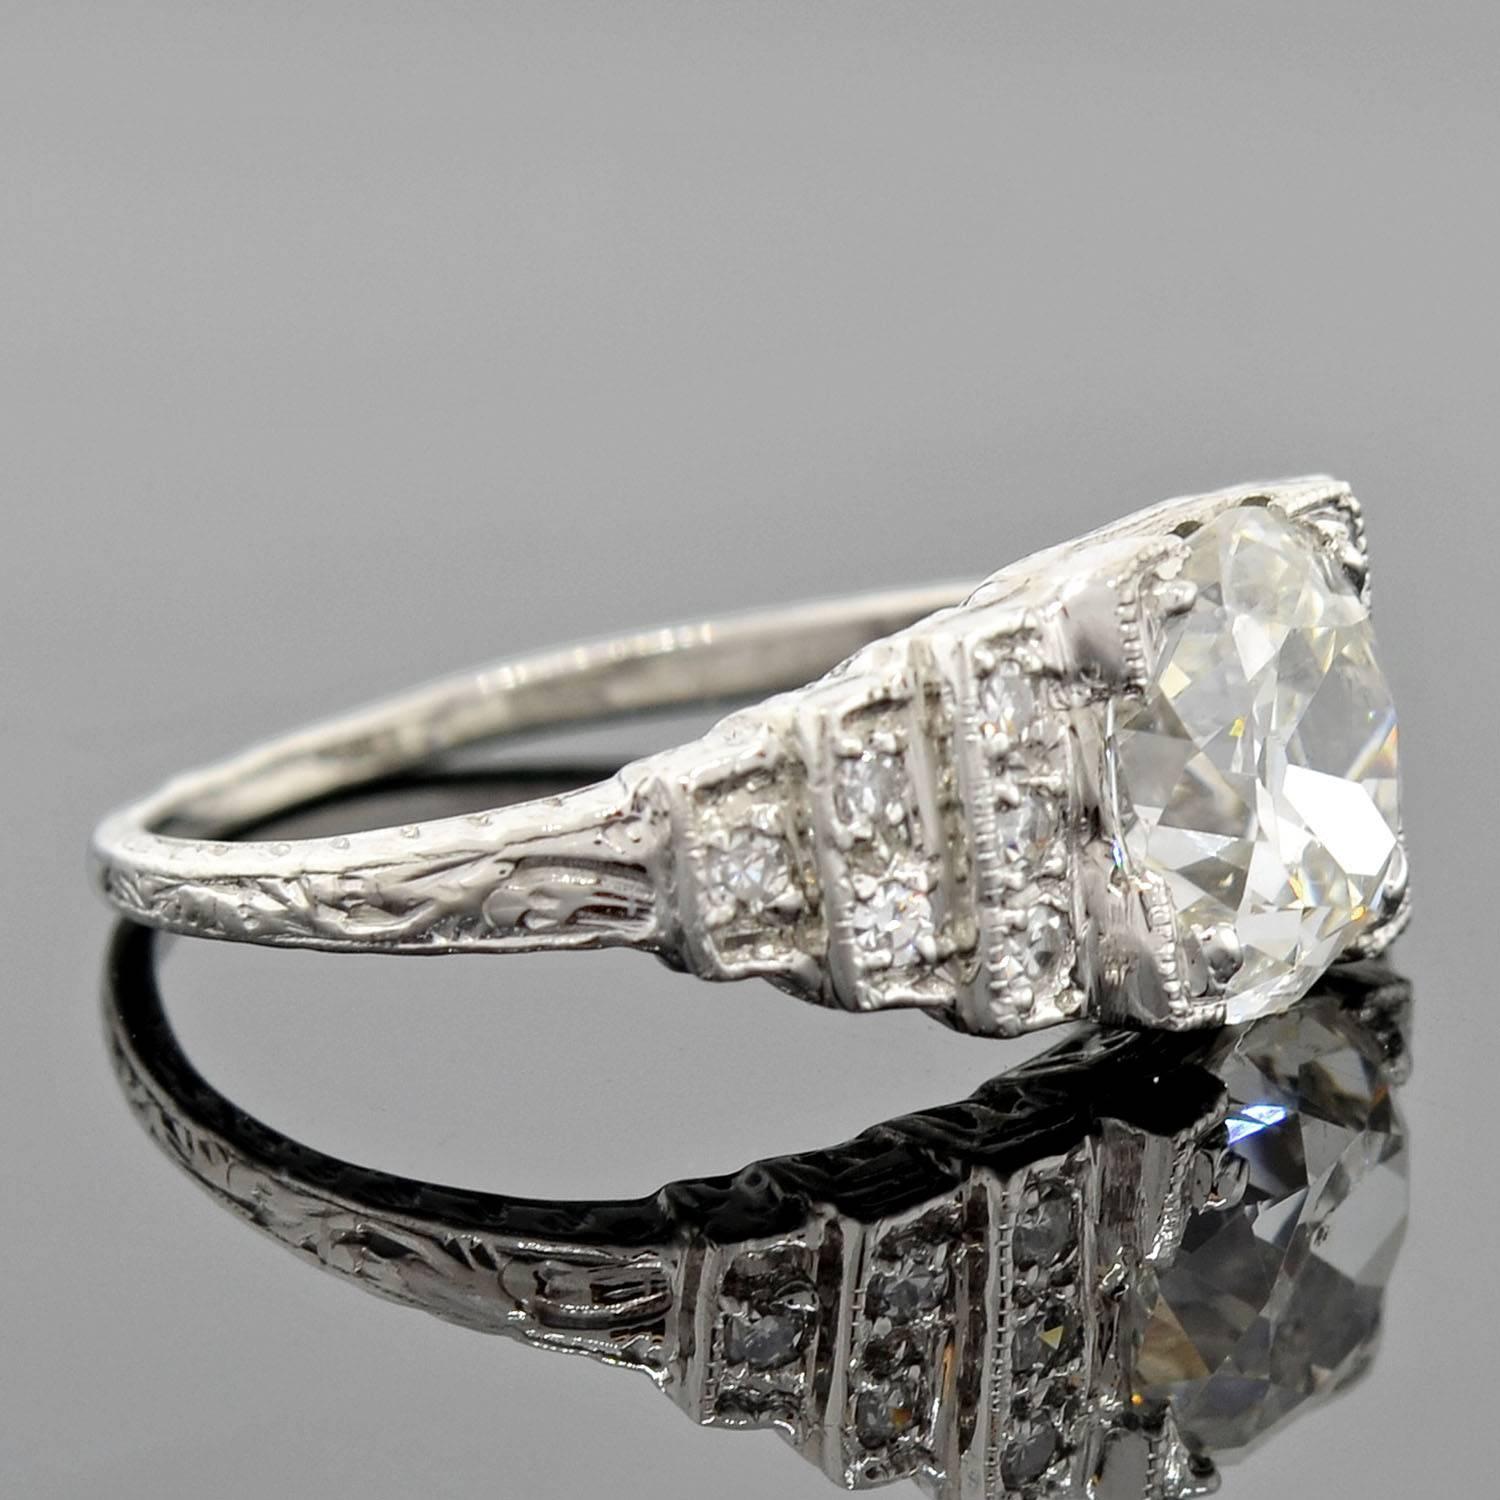 Ein exquisiter diamantener Verlobungsring aus der Zeit des Art déco (ca. 1920)! Dieses schöne Stück aus Platin hat eine schöne 